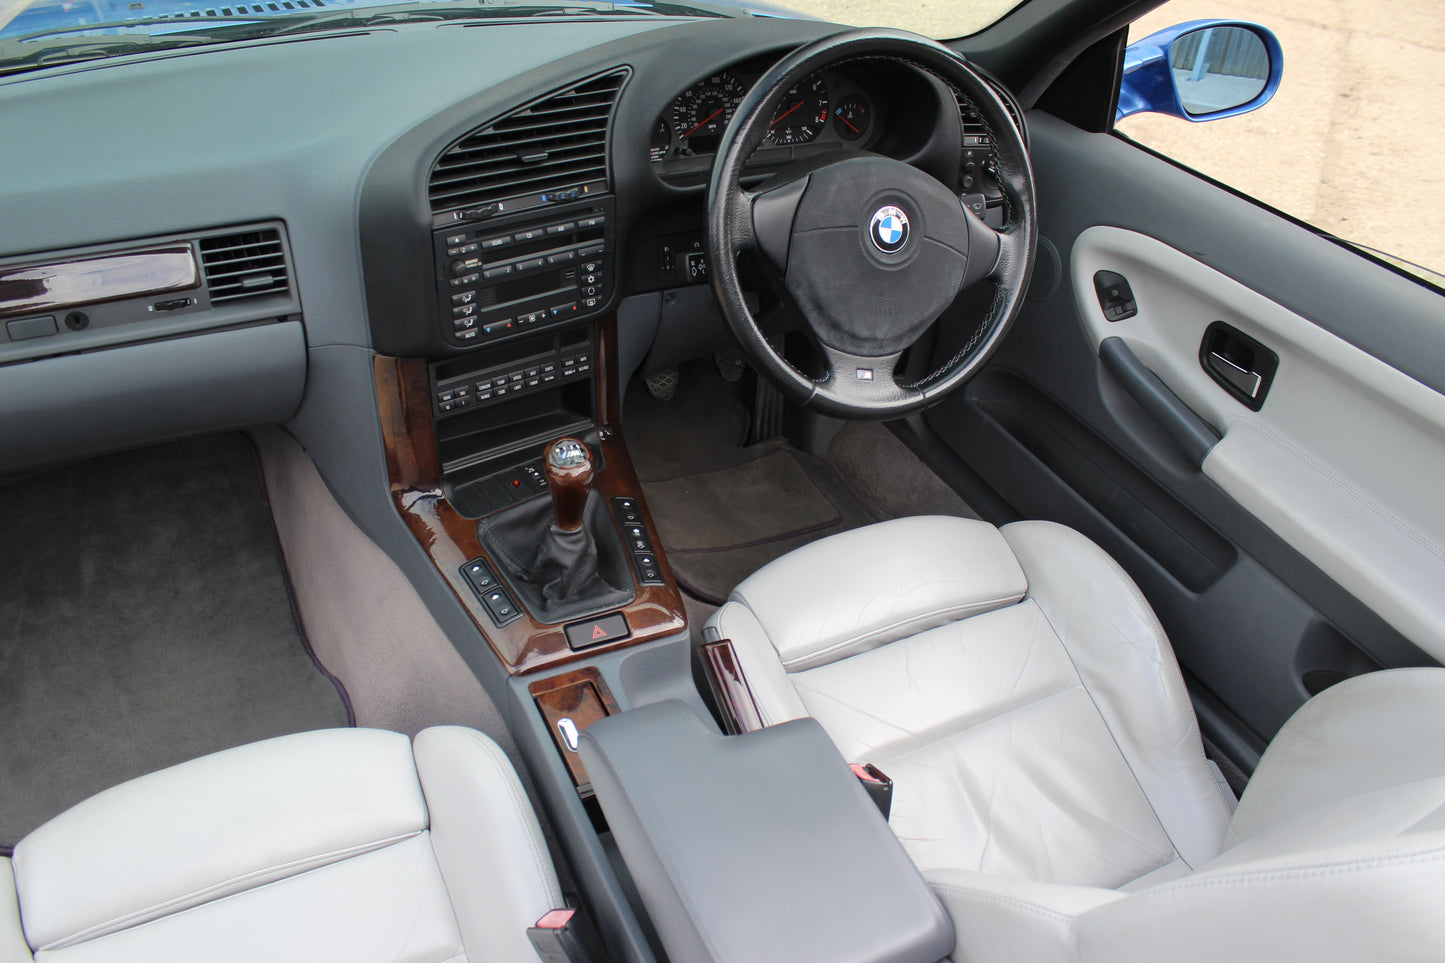 1998 BMW M3 Evo Convertible (E36)